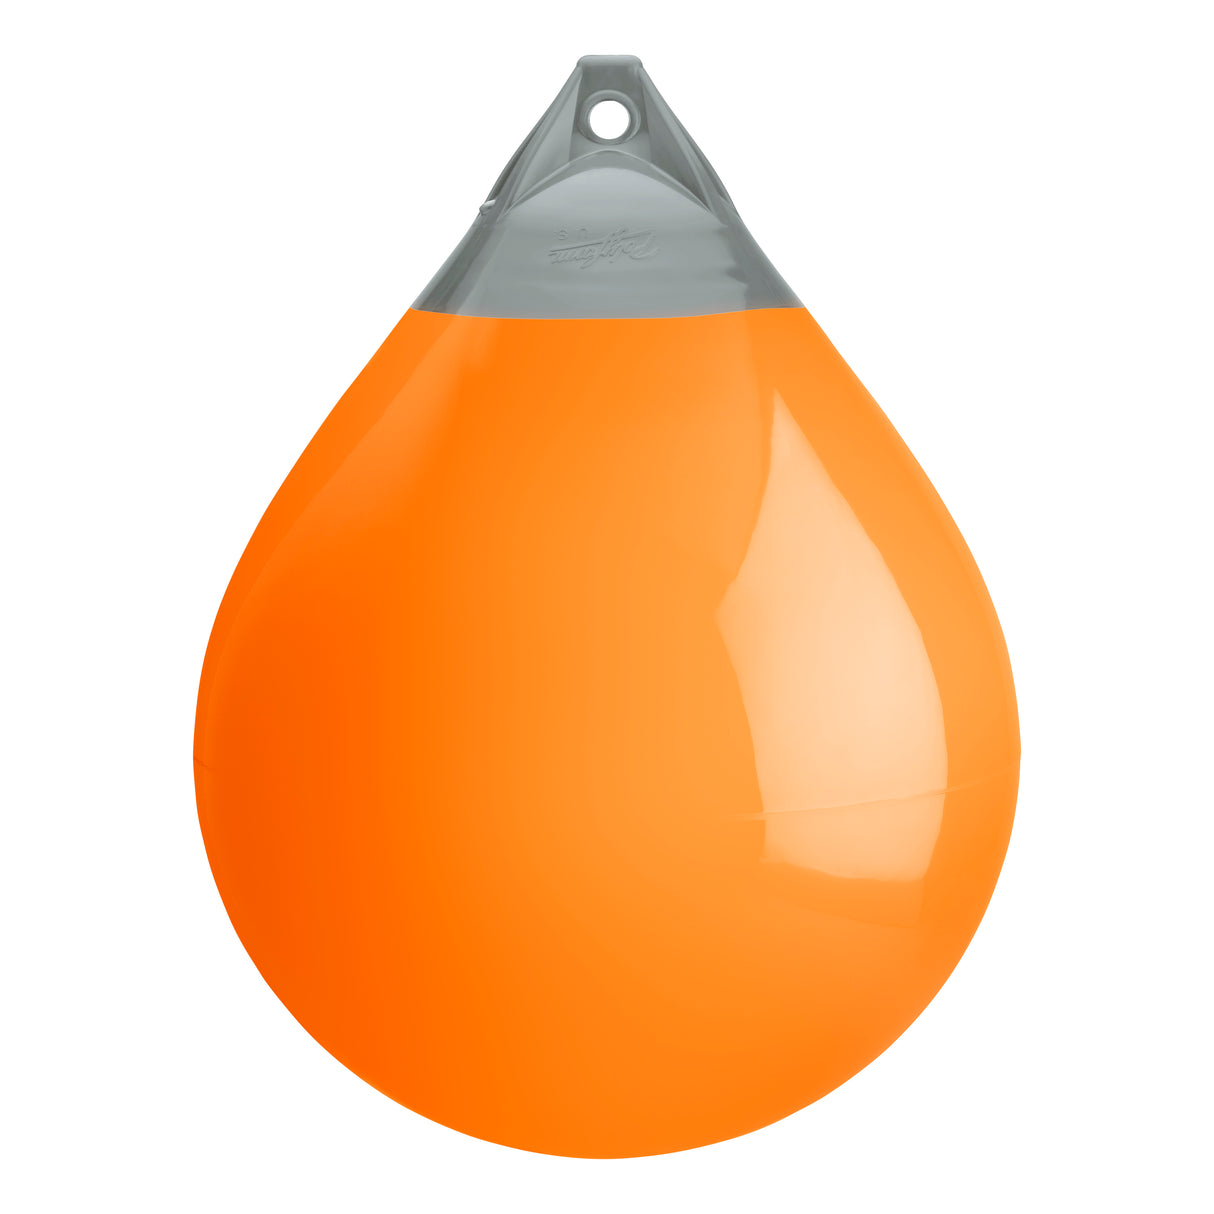 Orange buoy with Grey-Top, Polyform A-6